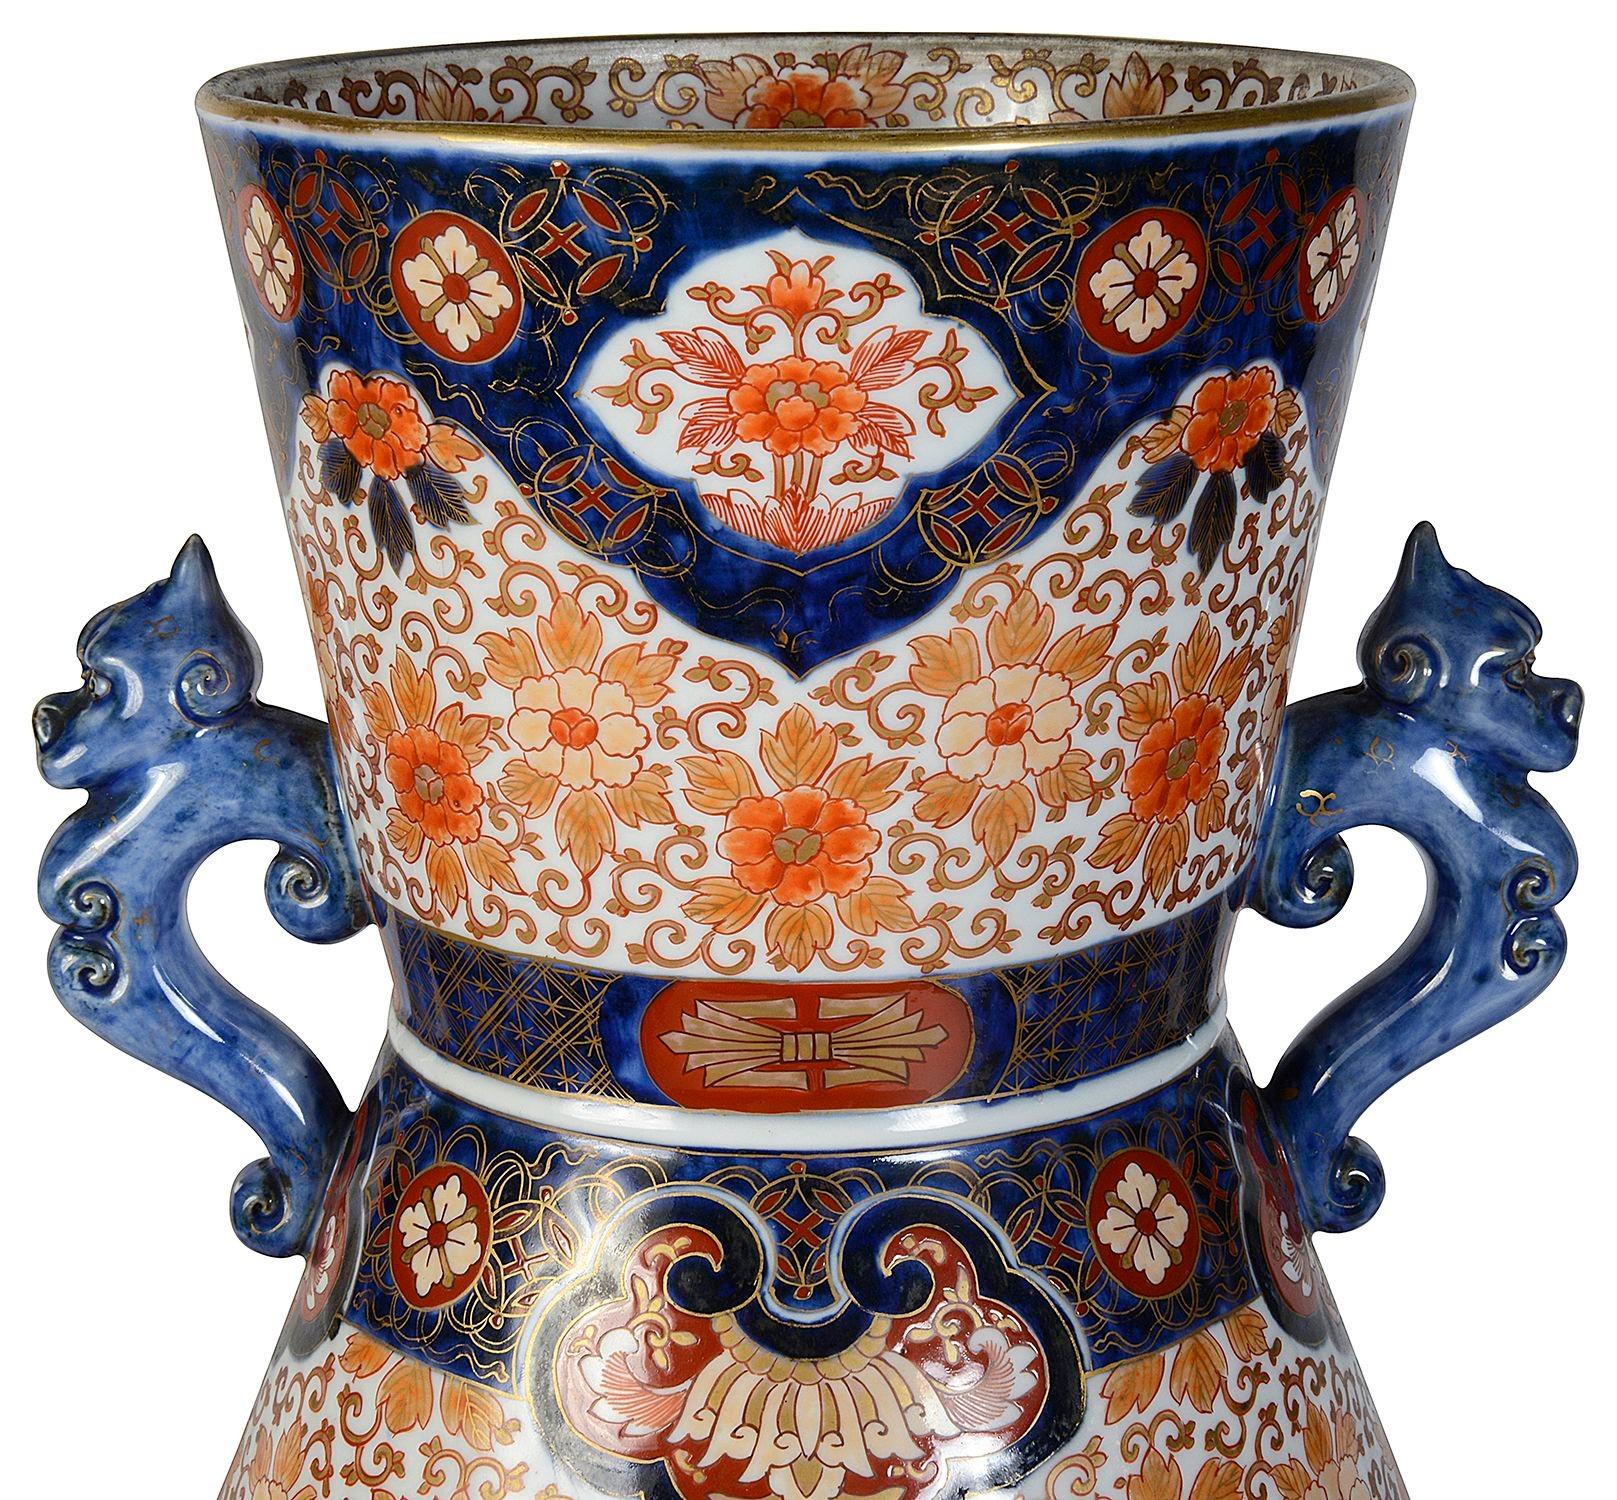 Un vase en porcelaine japonaise Imari de très bonne qualité, datant de la fin du 19e siècle, présentant de magnifiques couleurs classiques Imari de bleu, d'orange et de doré.
Le fond est décoré d'un motif classique et de panneaux peints à la main